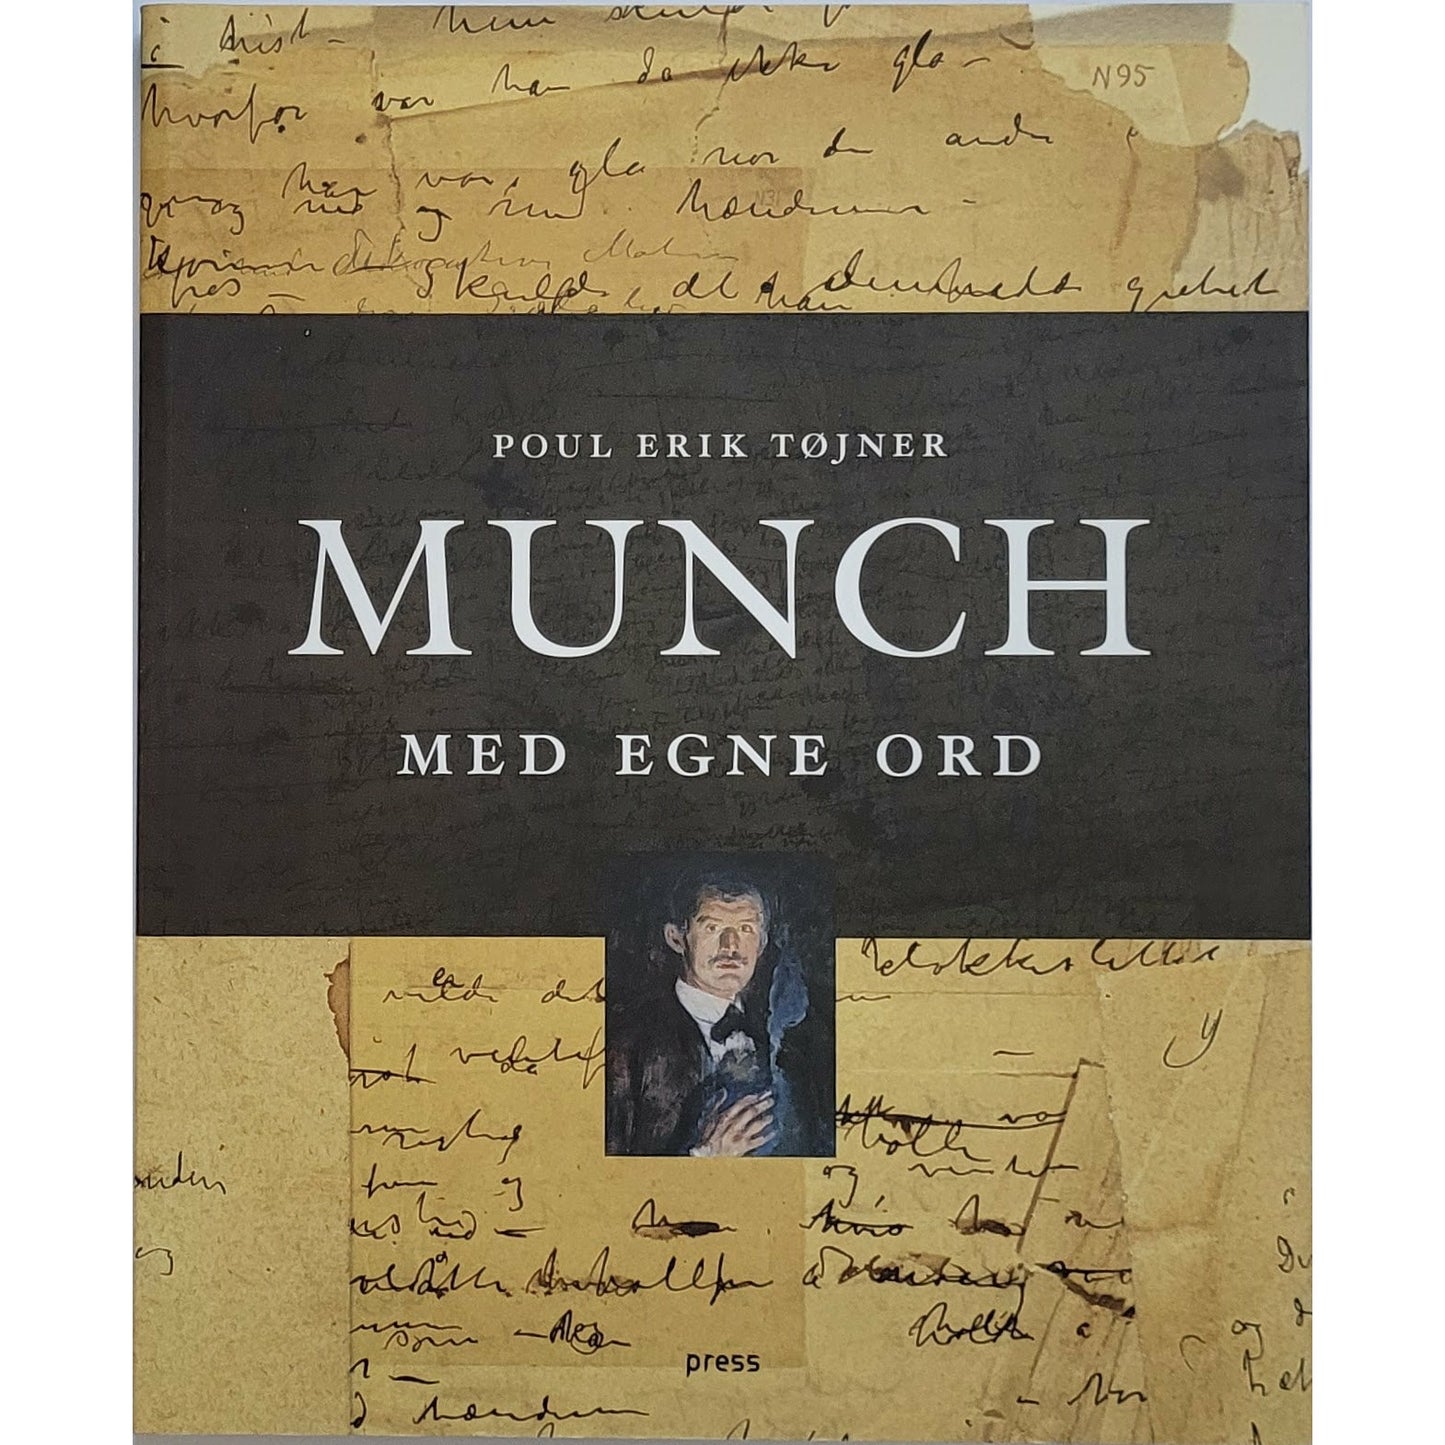 Munch - Med egne ord - Brukte bøker av Poul Erik Tøjner